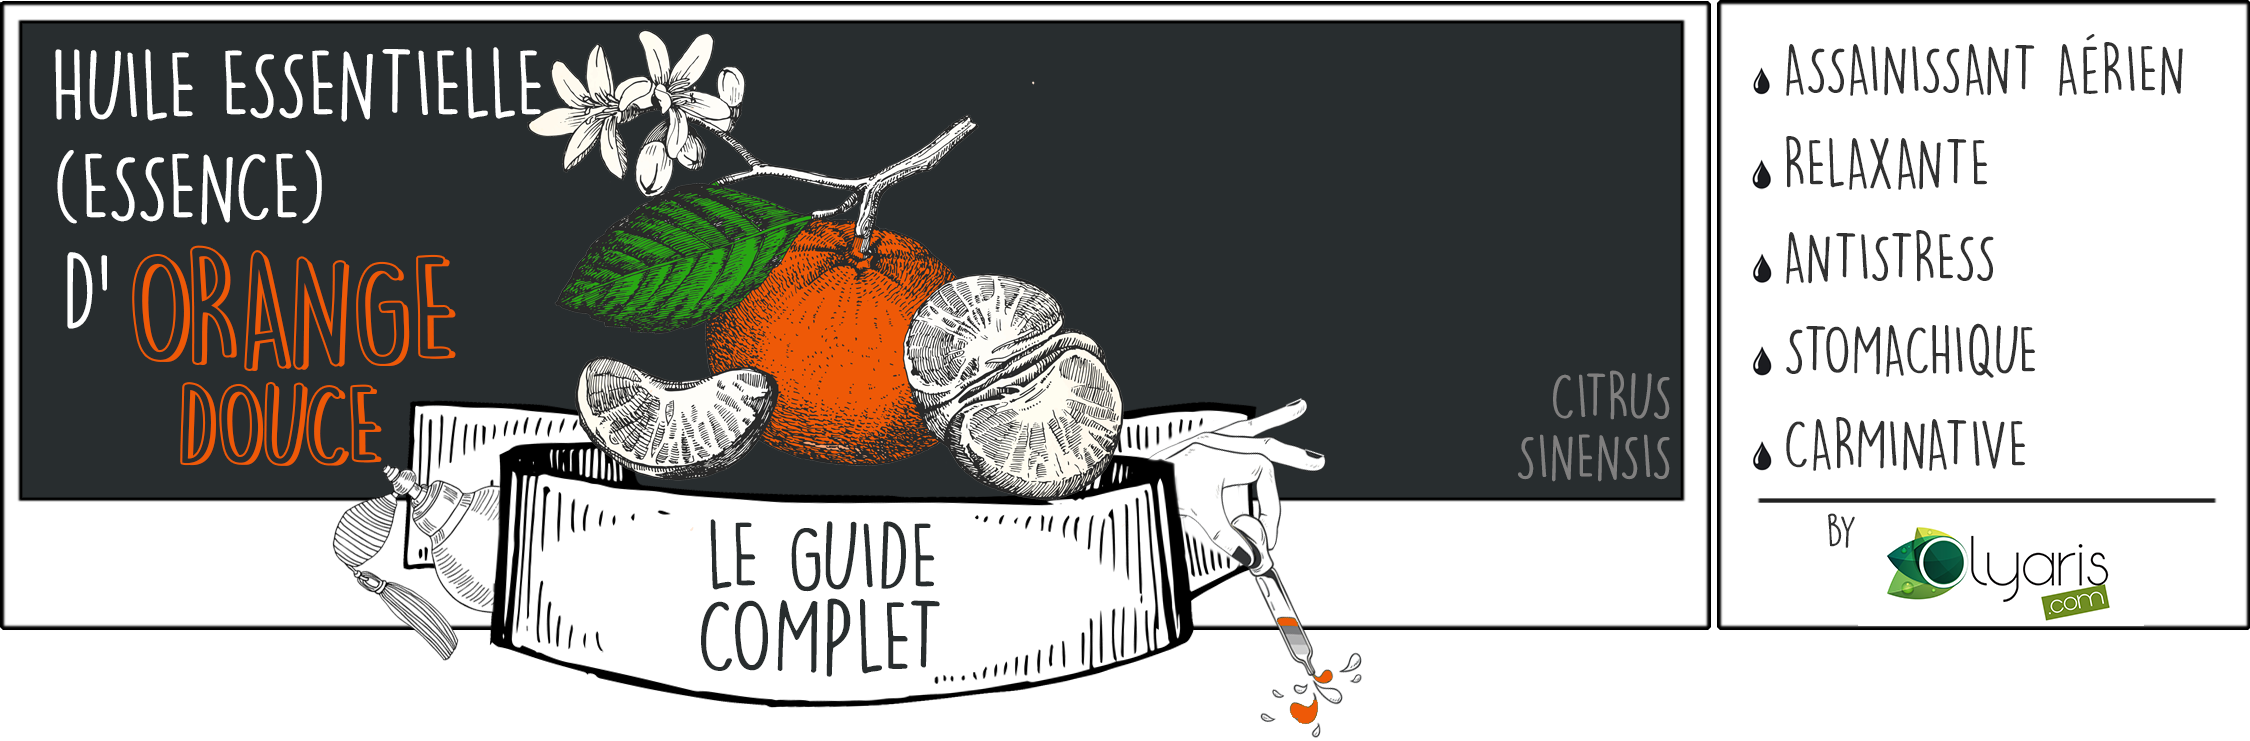 Huile Essentielle d'Orange Douce : le Guide Complet par Olyaris